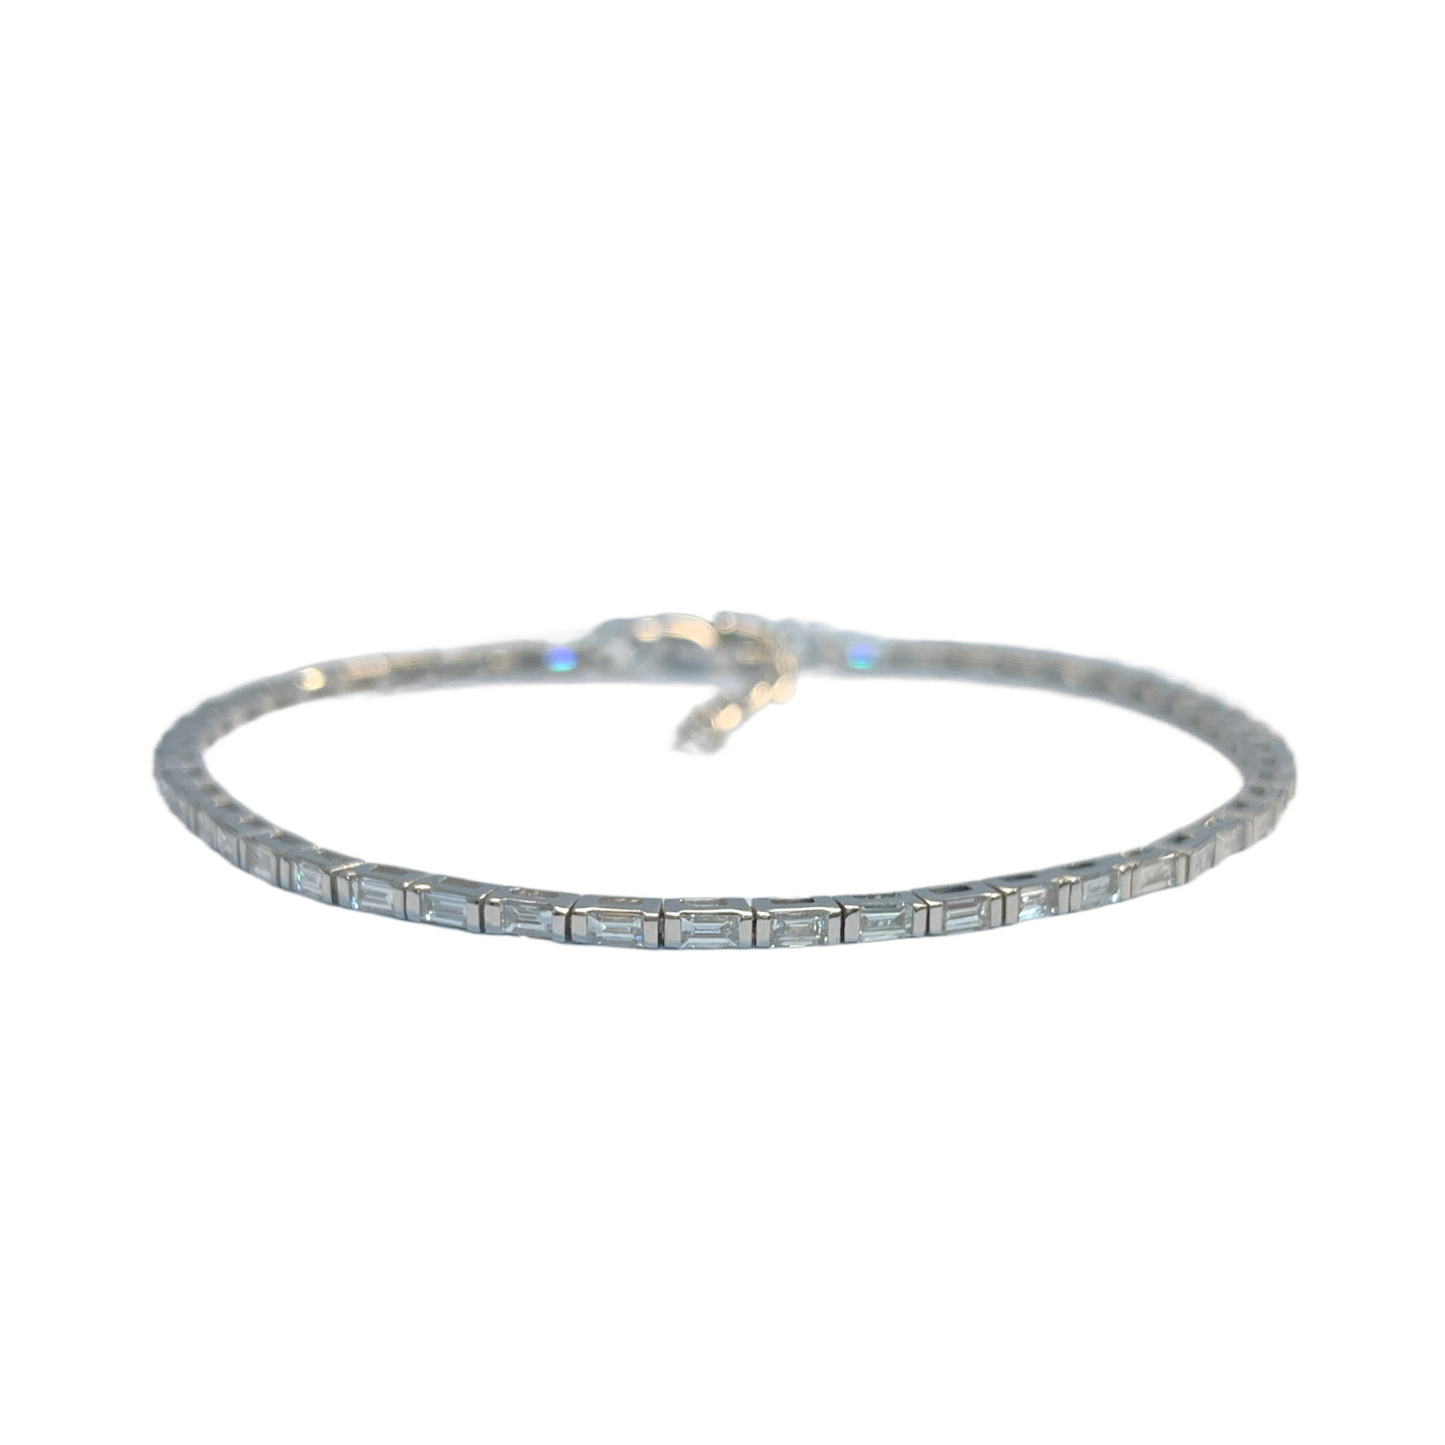 1.20 ctw Baguette Diamond Tennis Bracelet